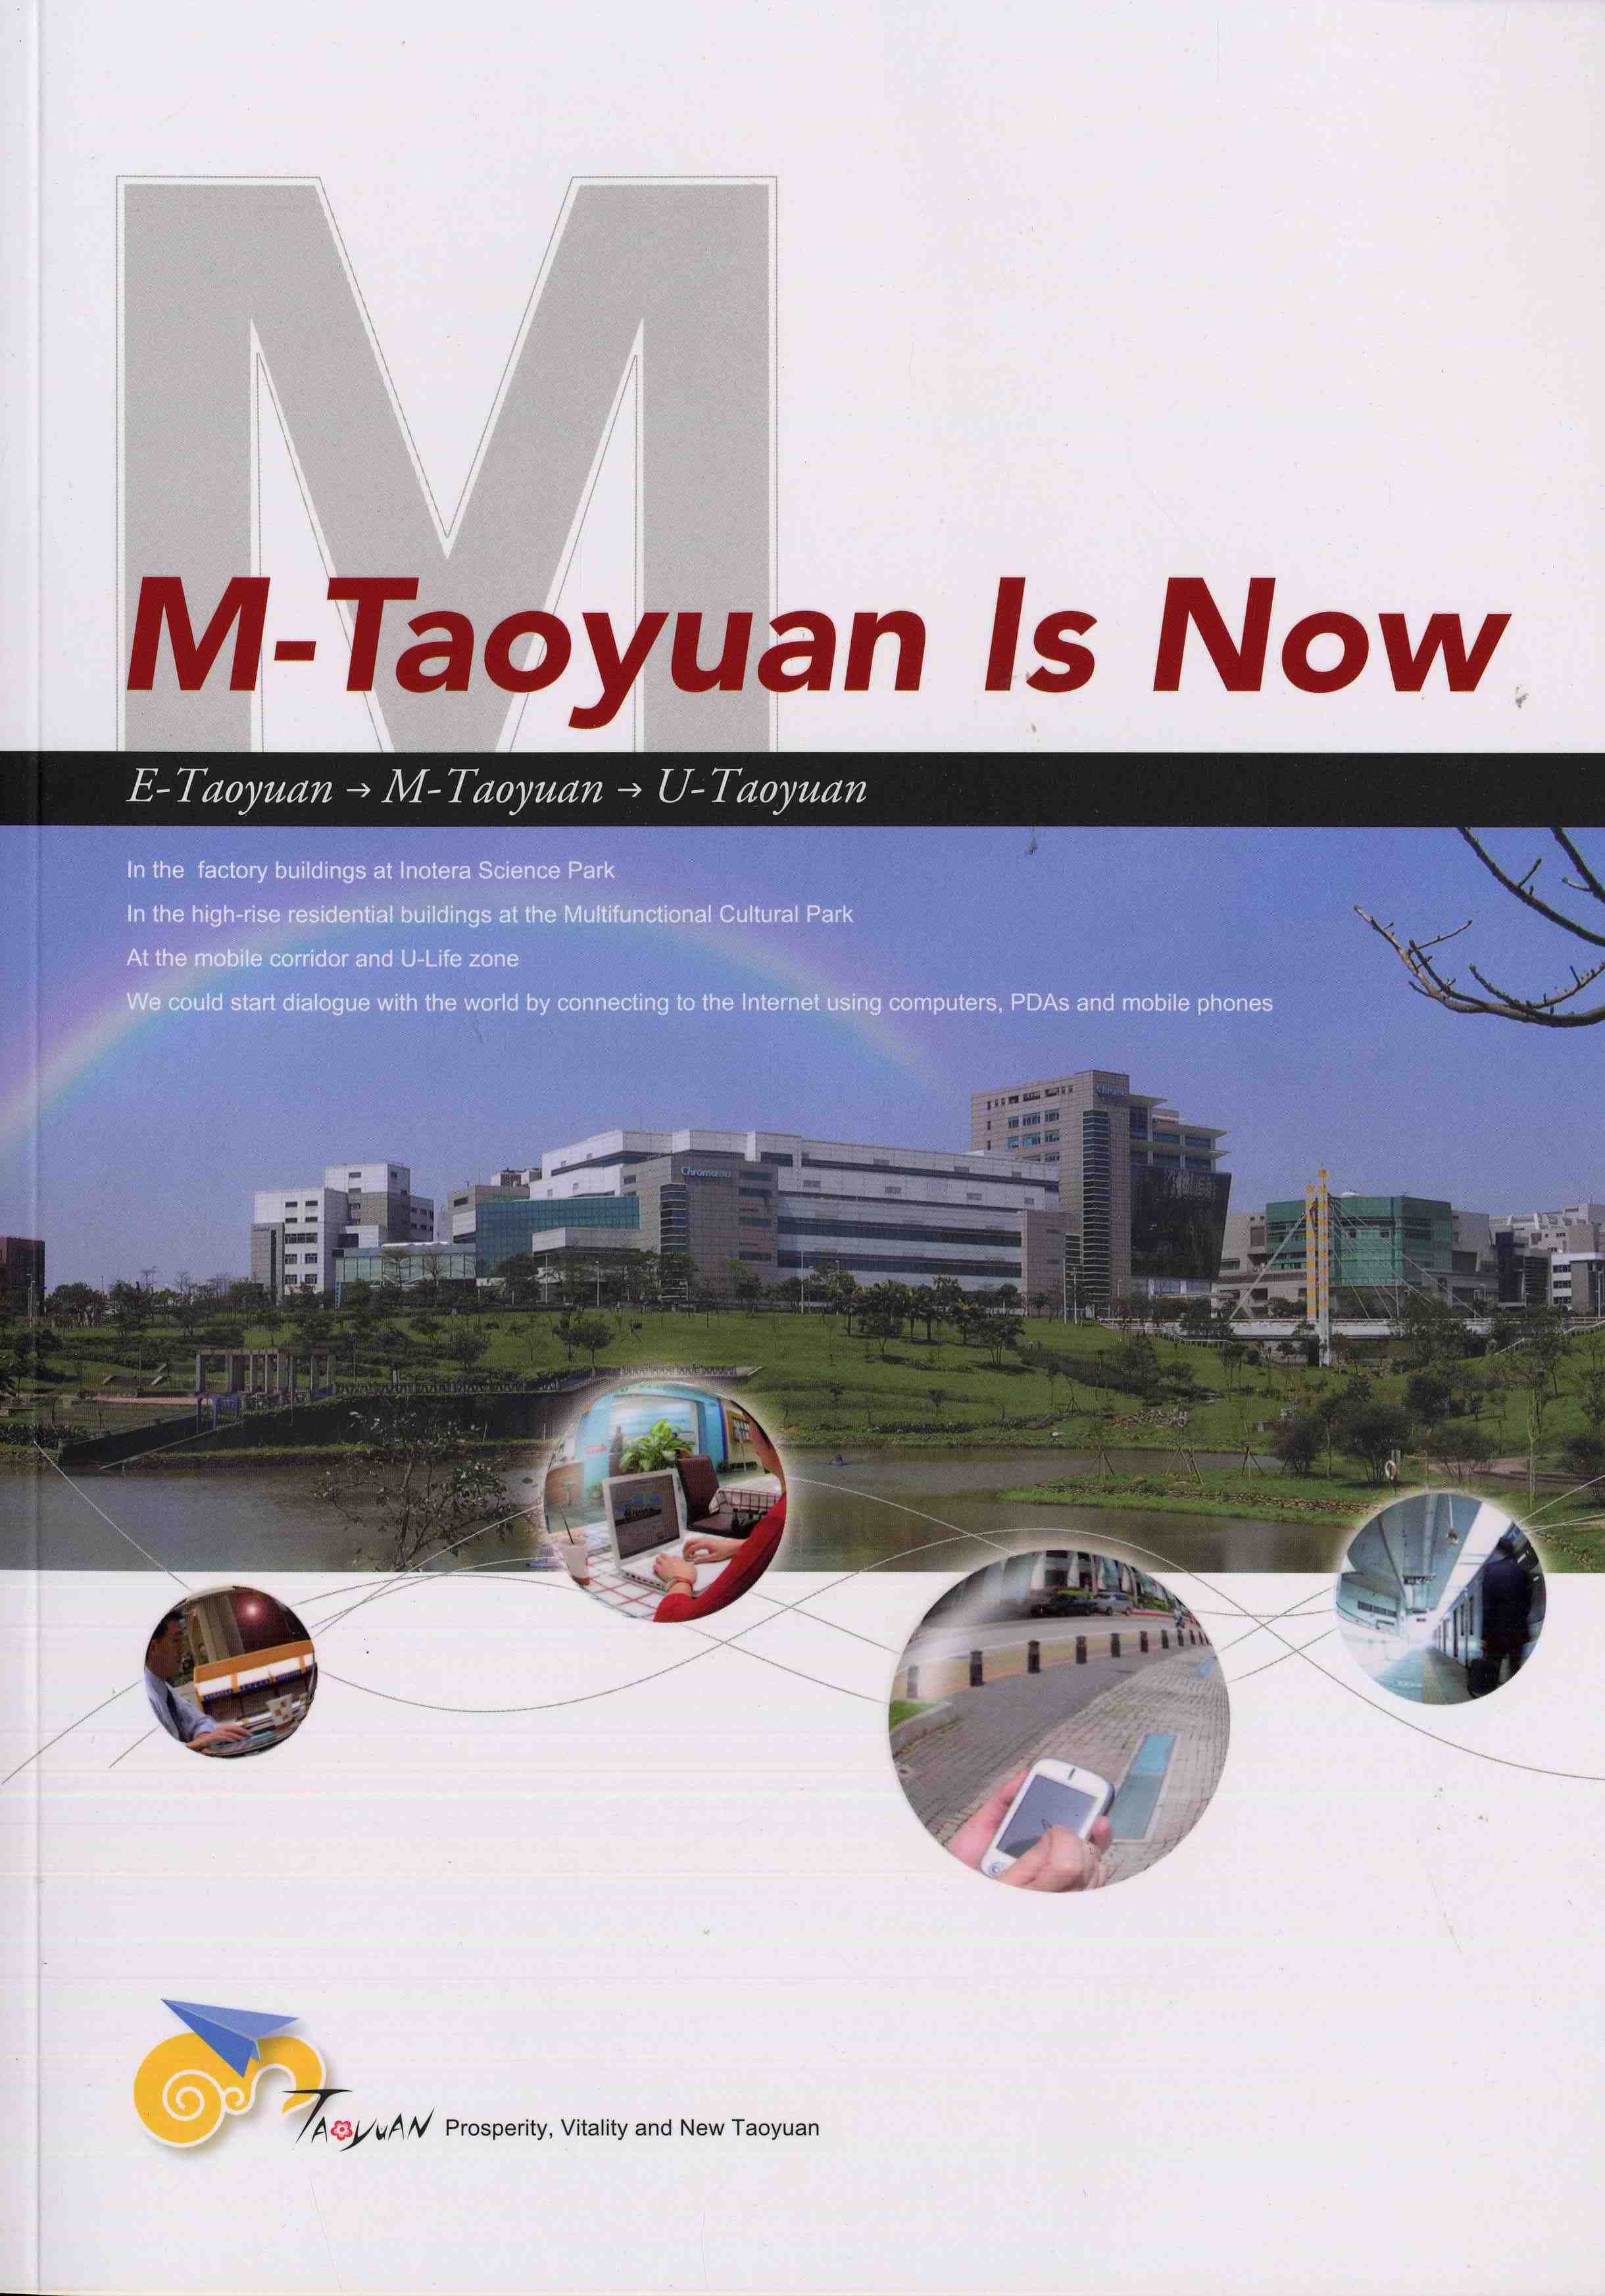 M-Taoyuan is Now